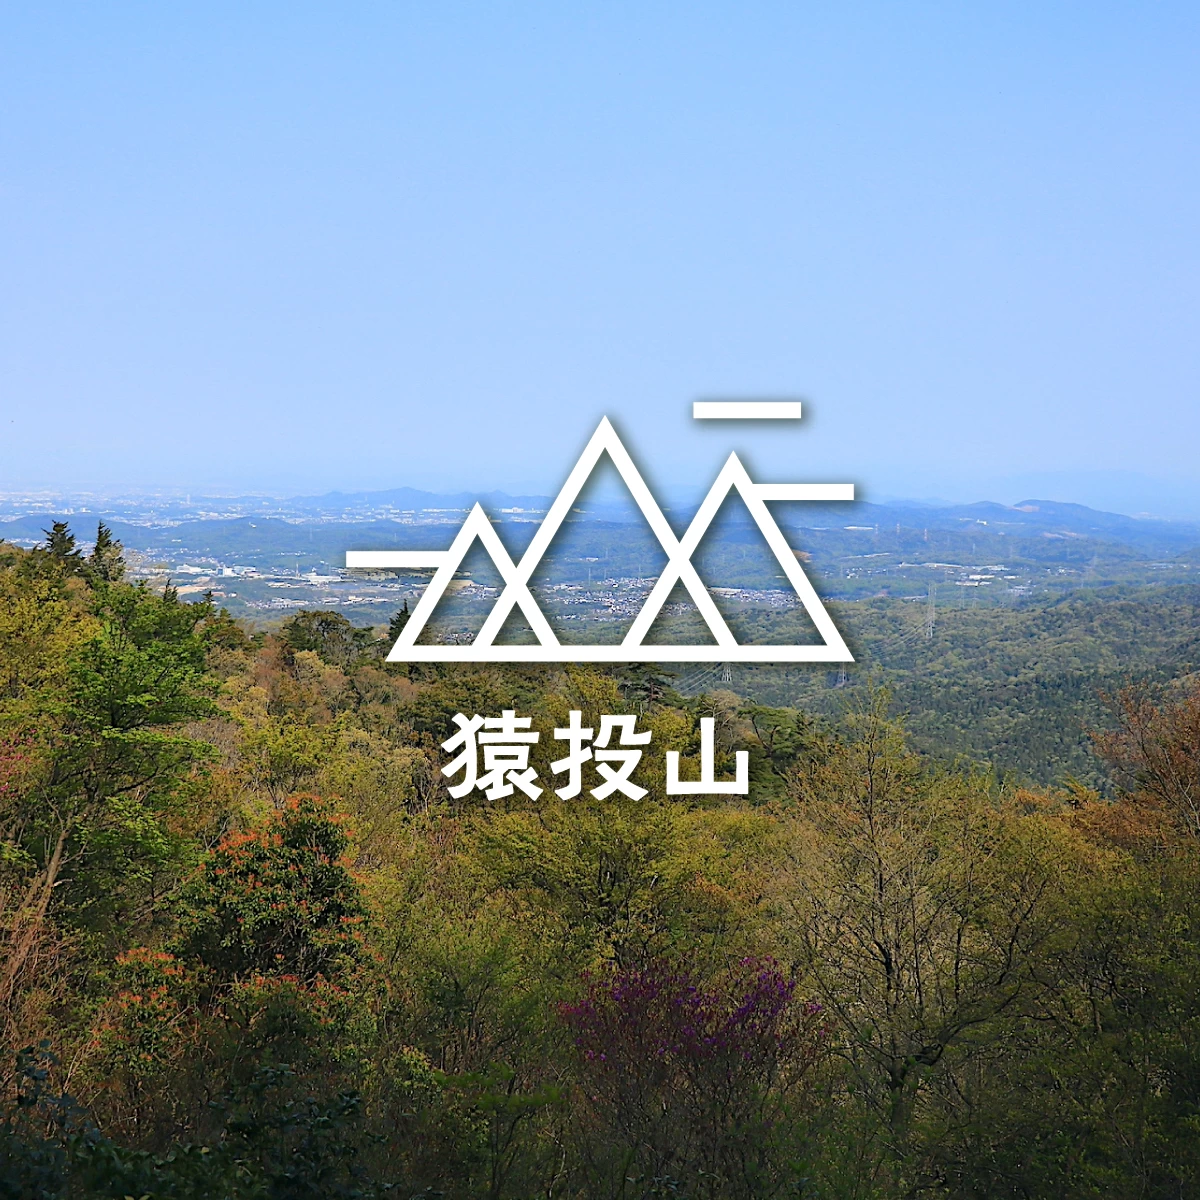 “愛知の高尾山”猿投山へ！初心者におすすめの気軽な登山旅